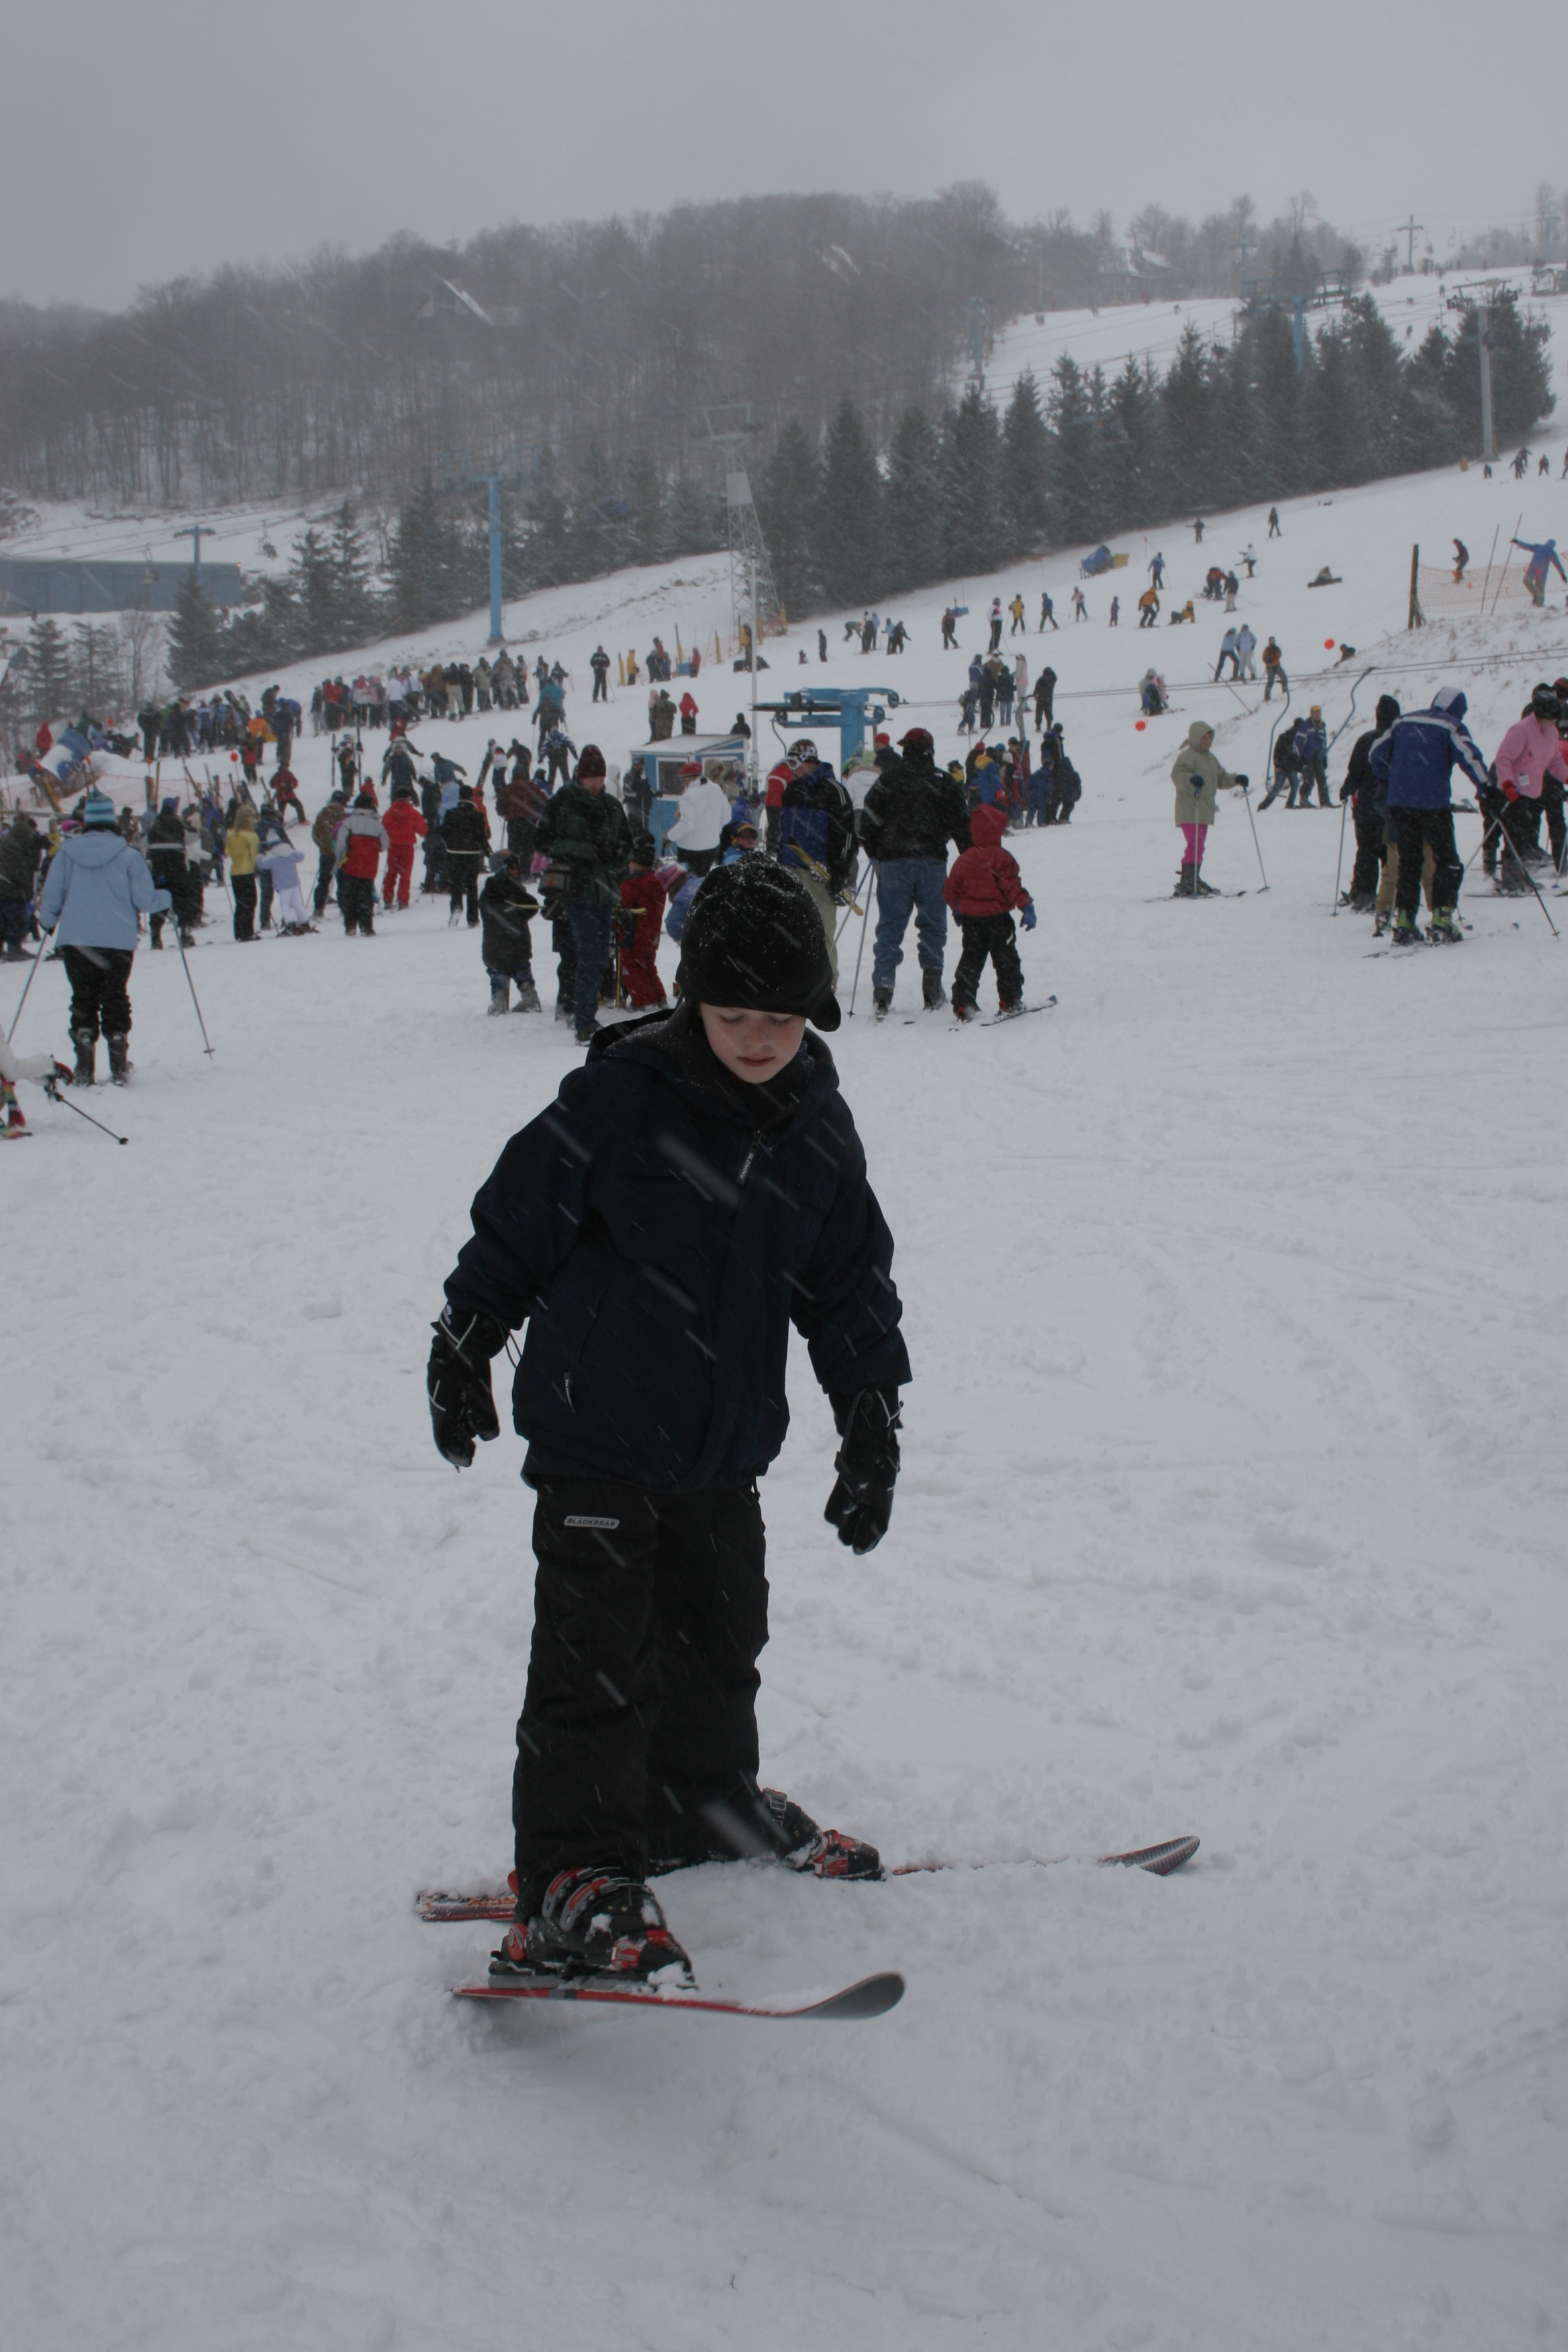 Ski Time At Ski Beech! Doing Great Grayson!